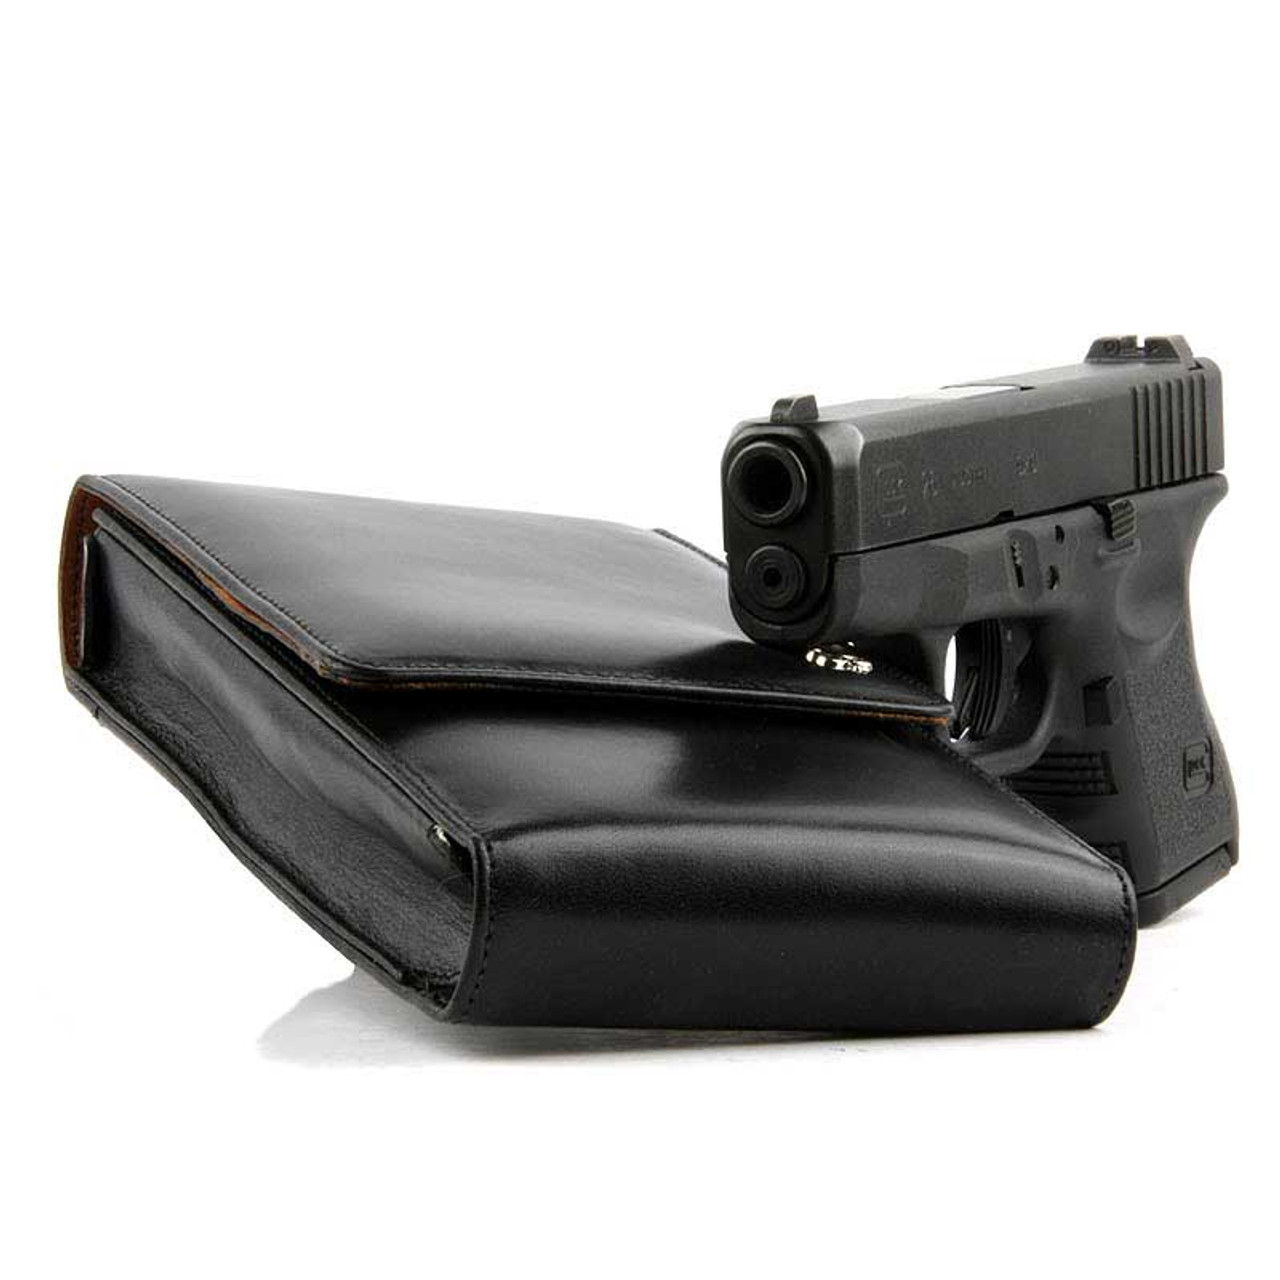 Glock 27 Sneaky Pete Holster (Belt Clip)